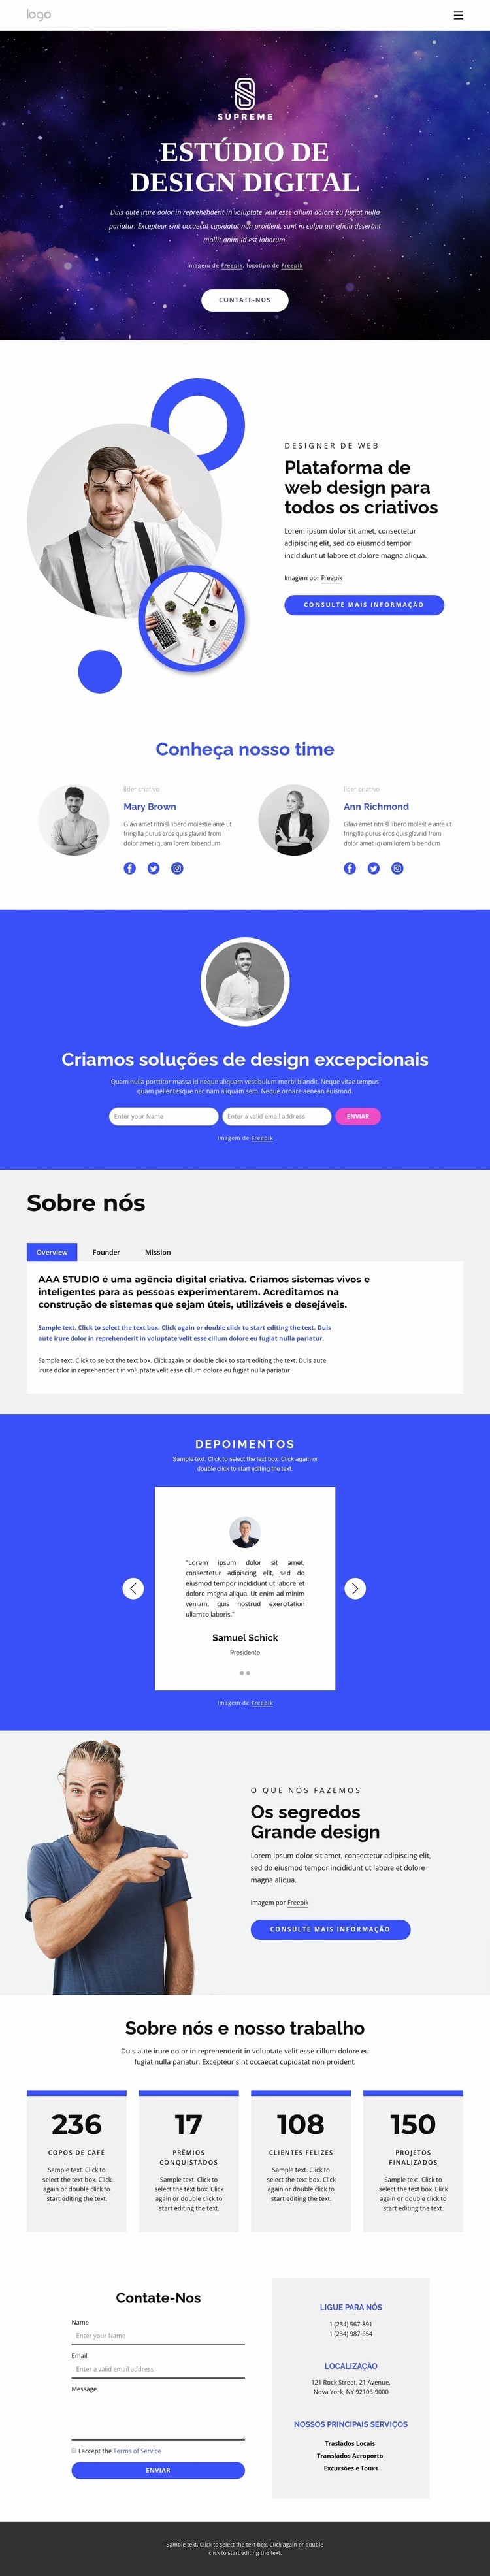 agência de design digital Modelo de uma página